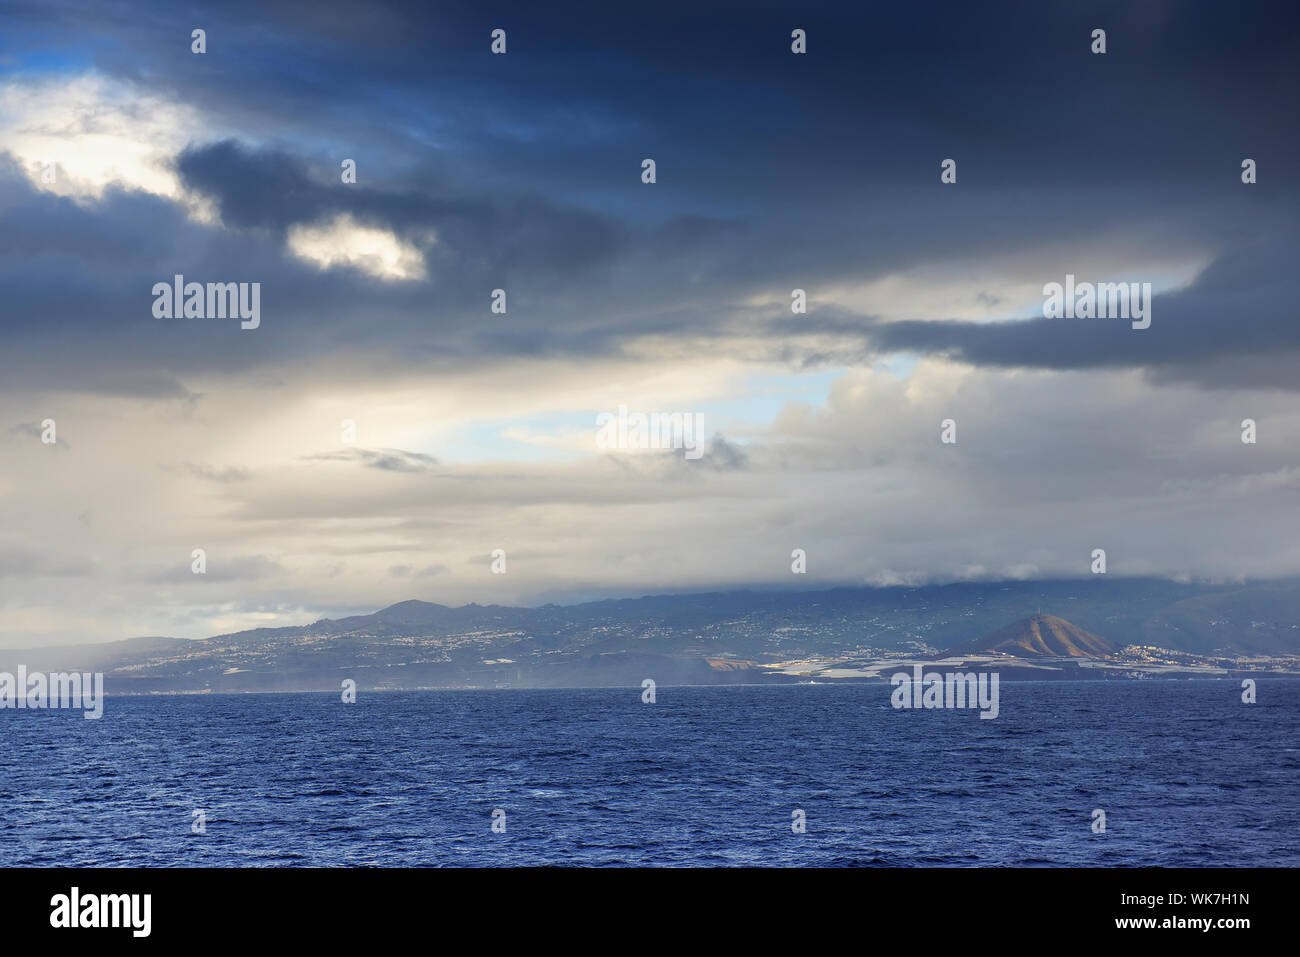 Vista panorámica del mar calma contra el cielo nublado Foto de stock